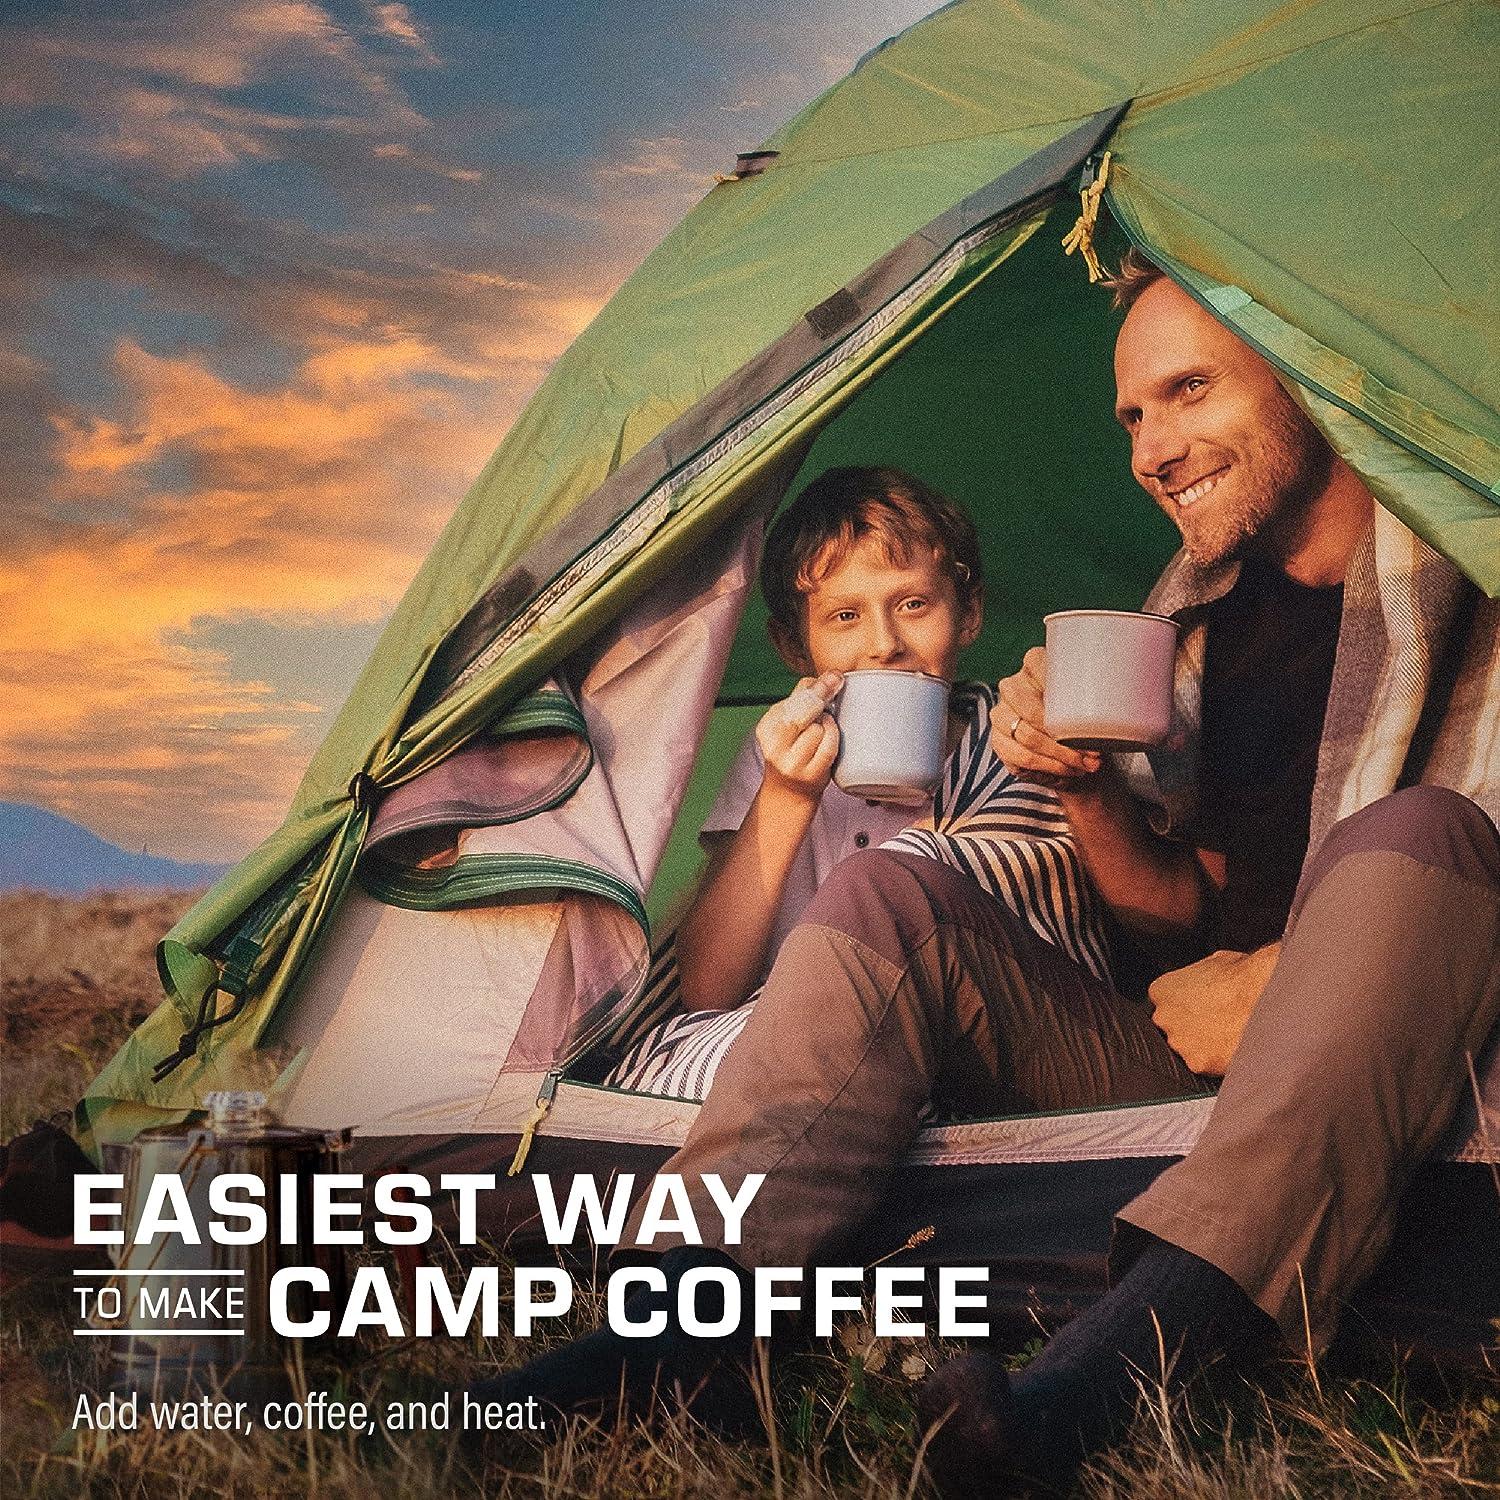 COLETTI Classic Camping Coffee Percolator - Camping Coffee Pot